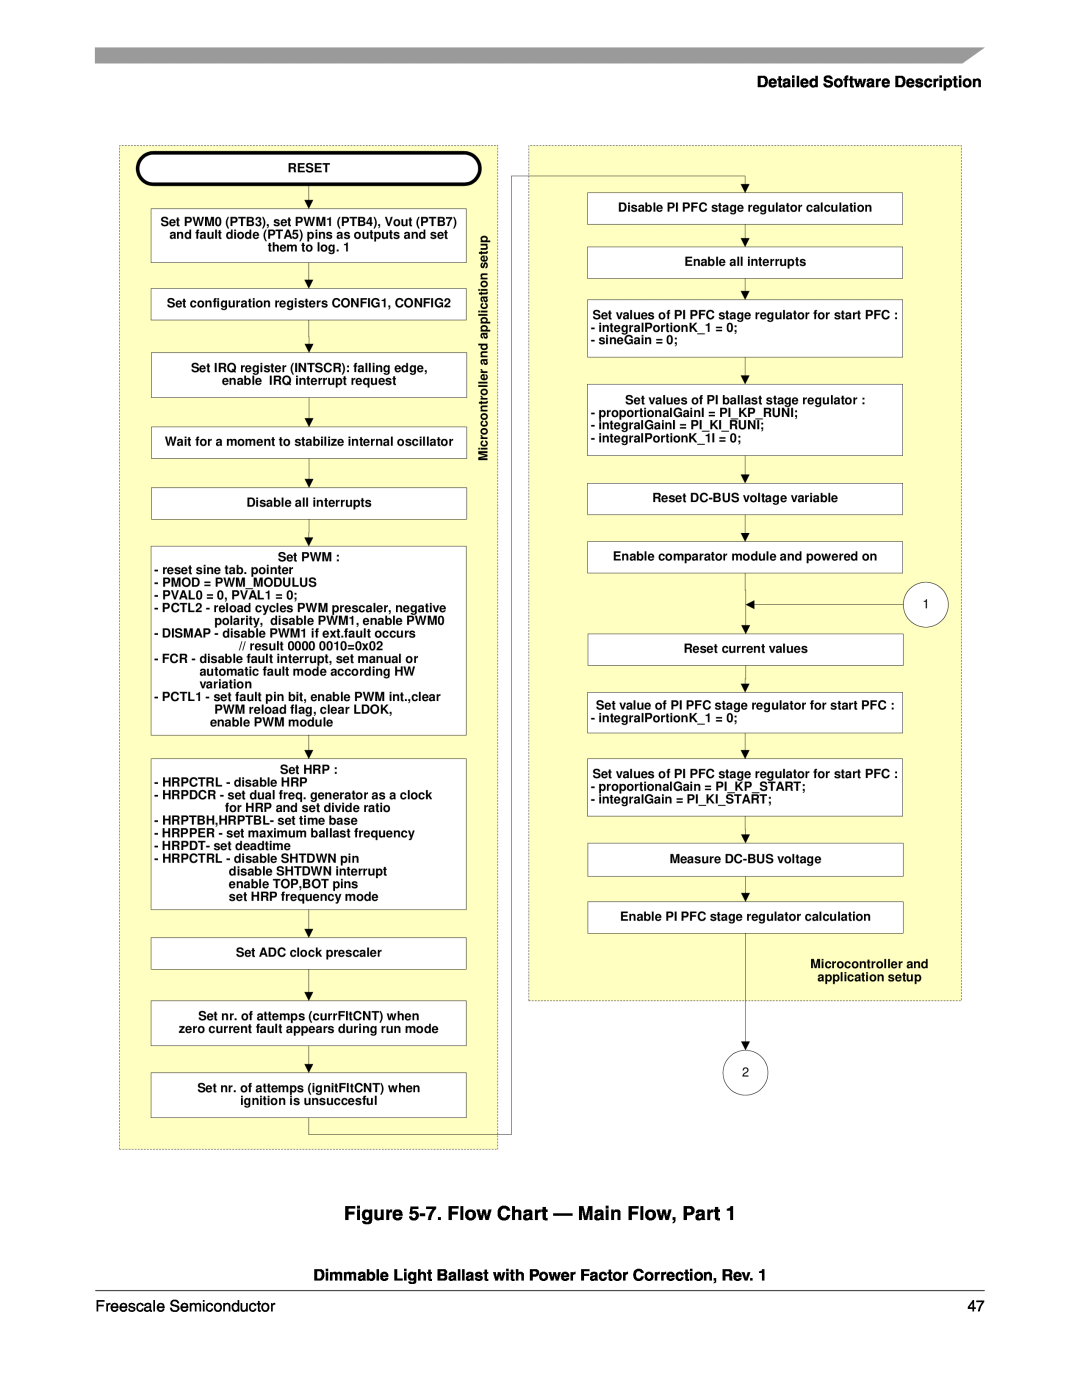 Freescale Semiconductor M68HC08 manual 7.Flow Chart - Main Flow, Part, Detailed Software Description 